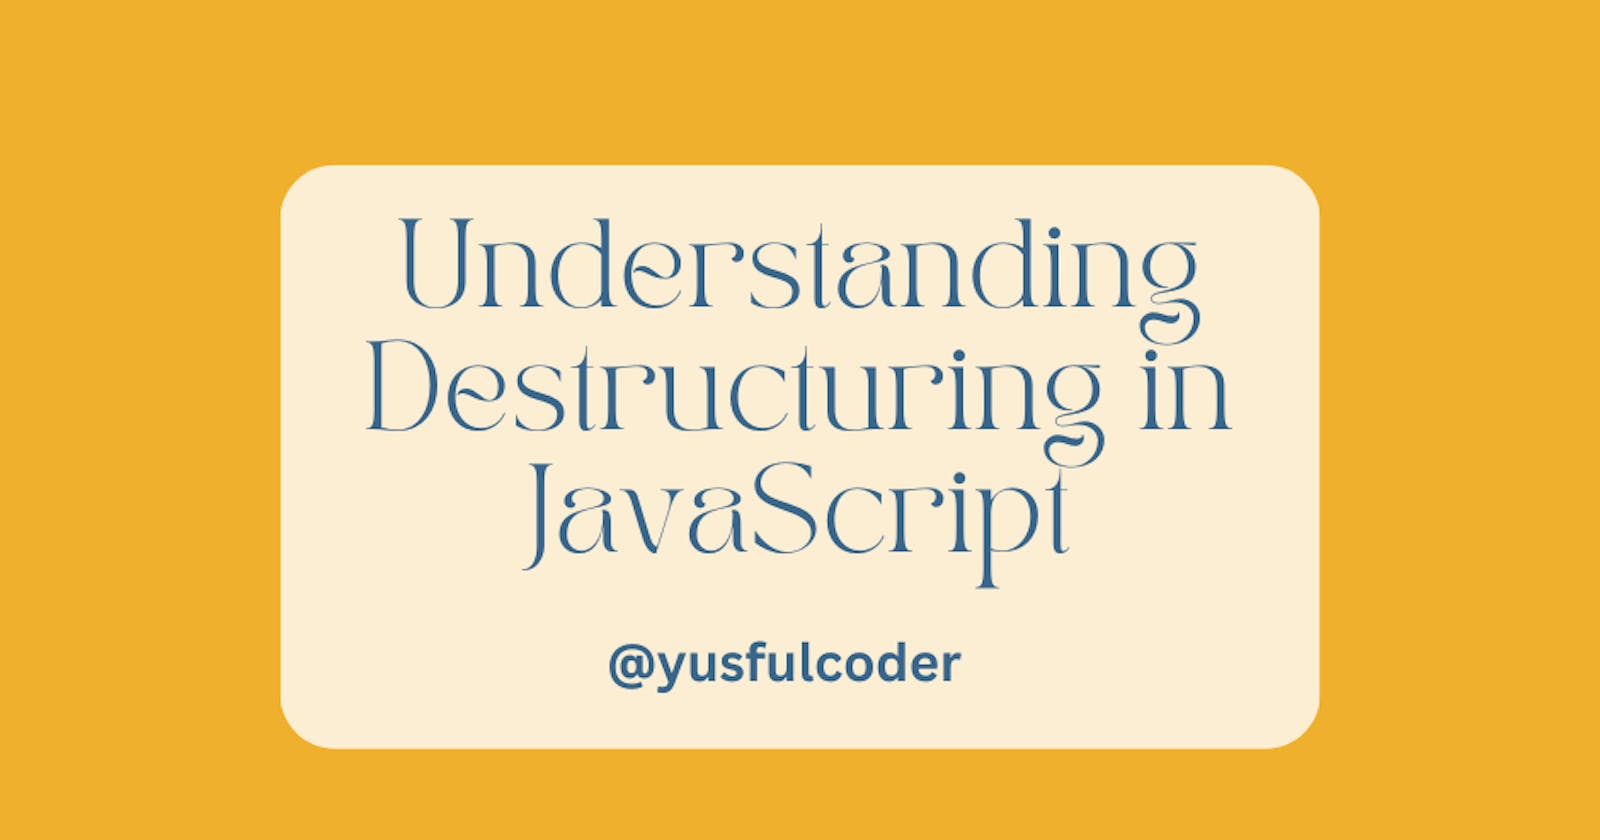 Understanding Destructuring in JavaScript.